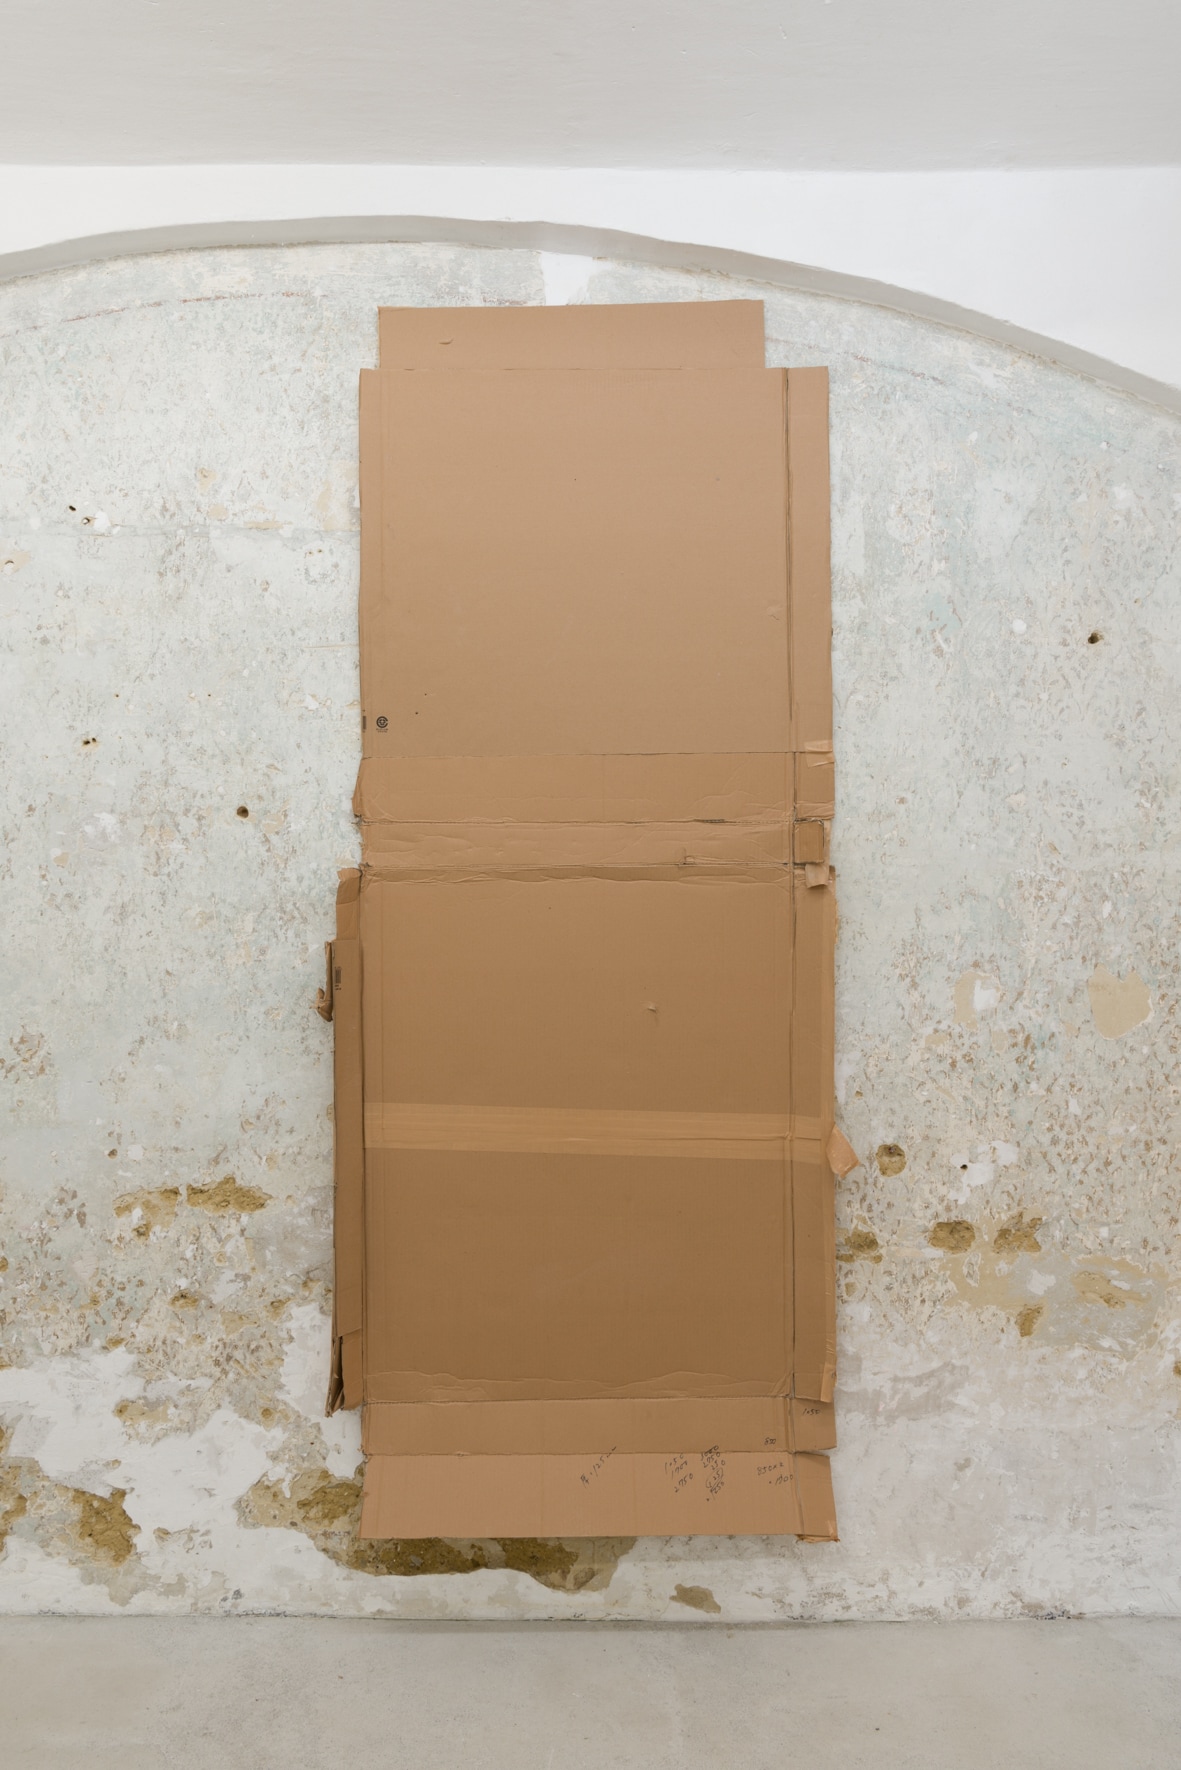 Yuu Takamizawa, Cardboard in Vienna, cardboard, 2020